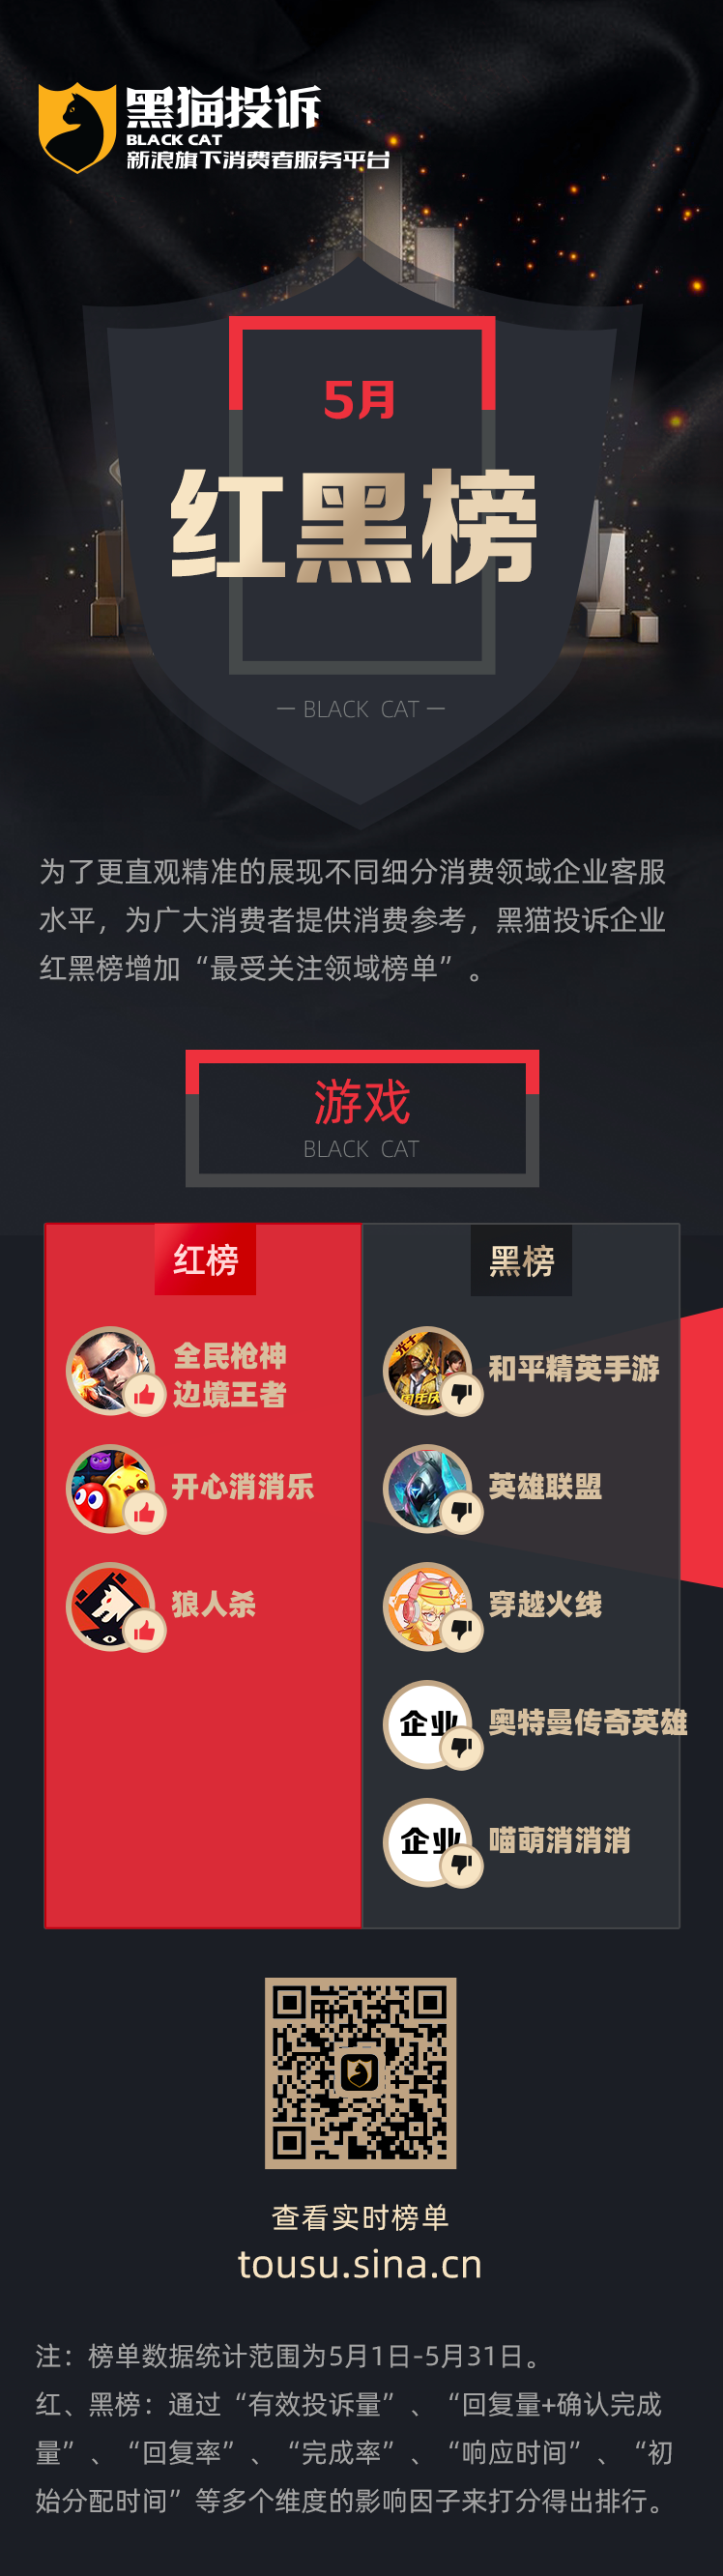 5月黑猫投诉游戏领域红黑榜——腾讯系游戏频登黑榜